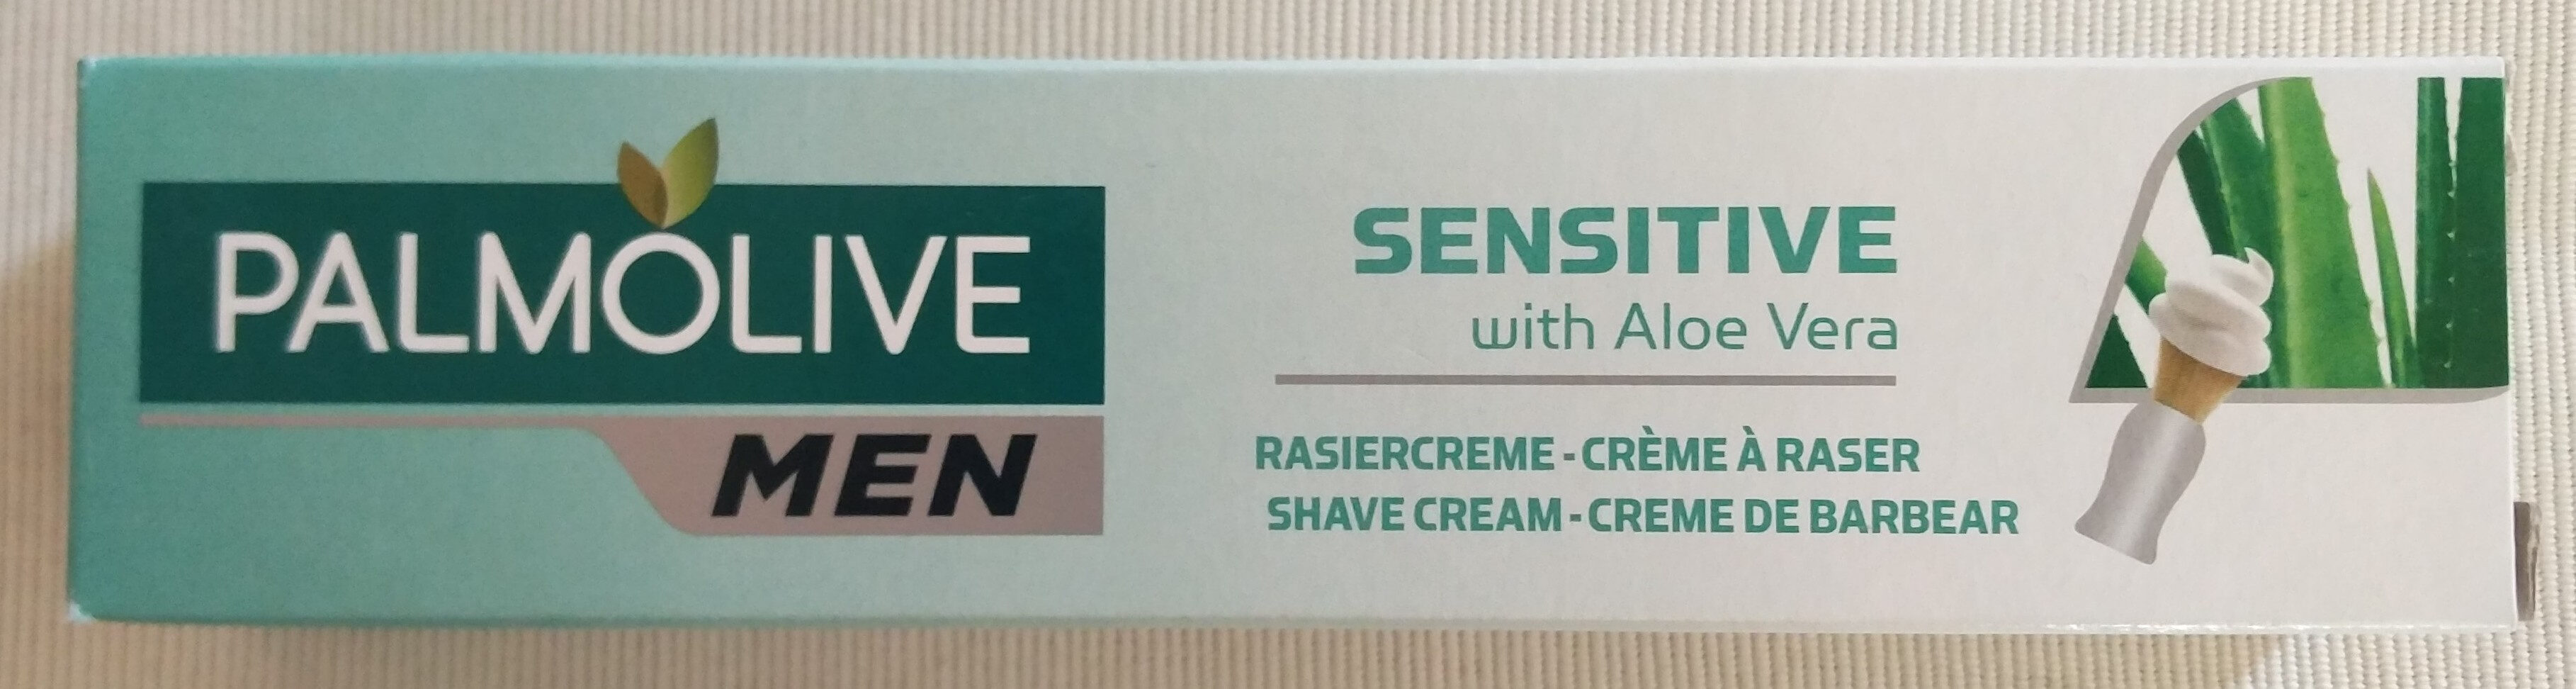 Rasiercreme Sensitive (with Palm Extract) - Produit - de